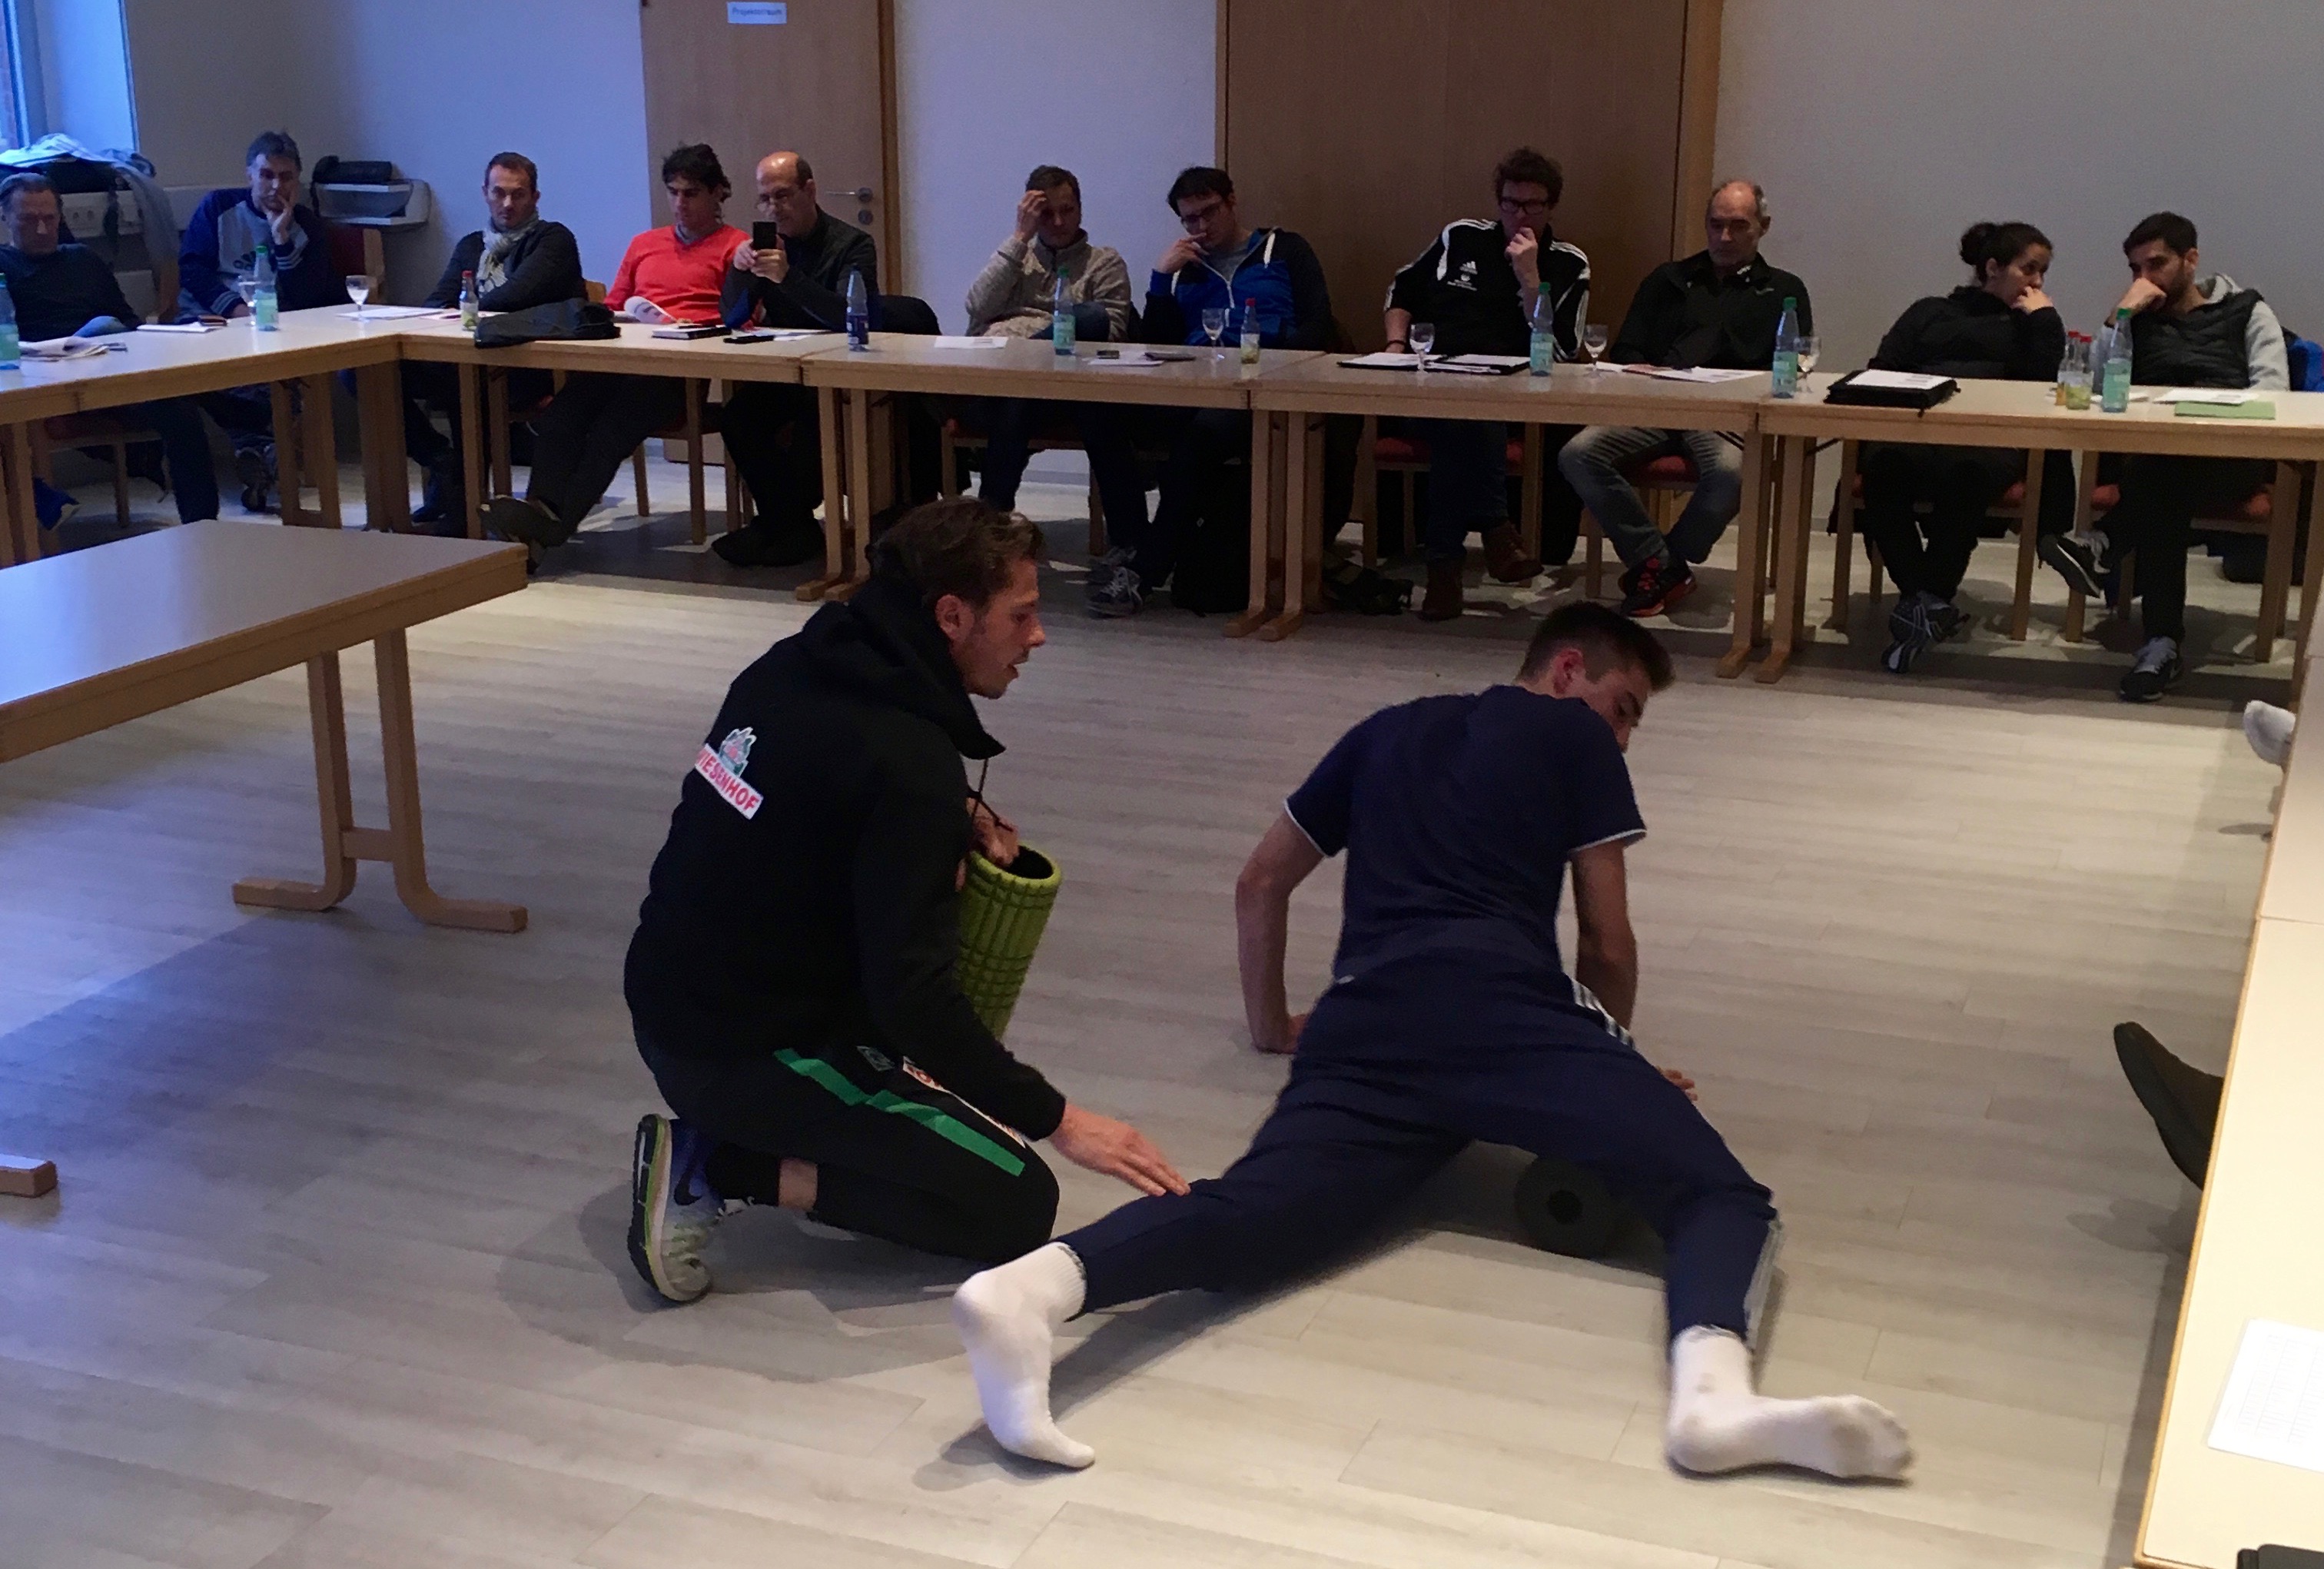 Workshop in Bremen - Athletiktraining im ambitionierten Amateurbereich?! Sinn, Zweck, Machbarkeit?! - 01.12.16